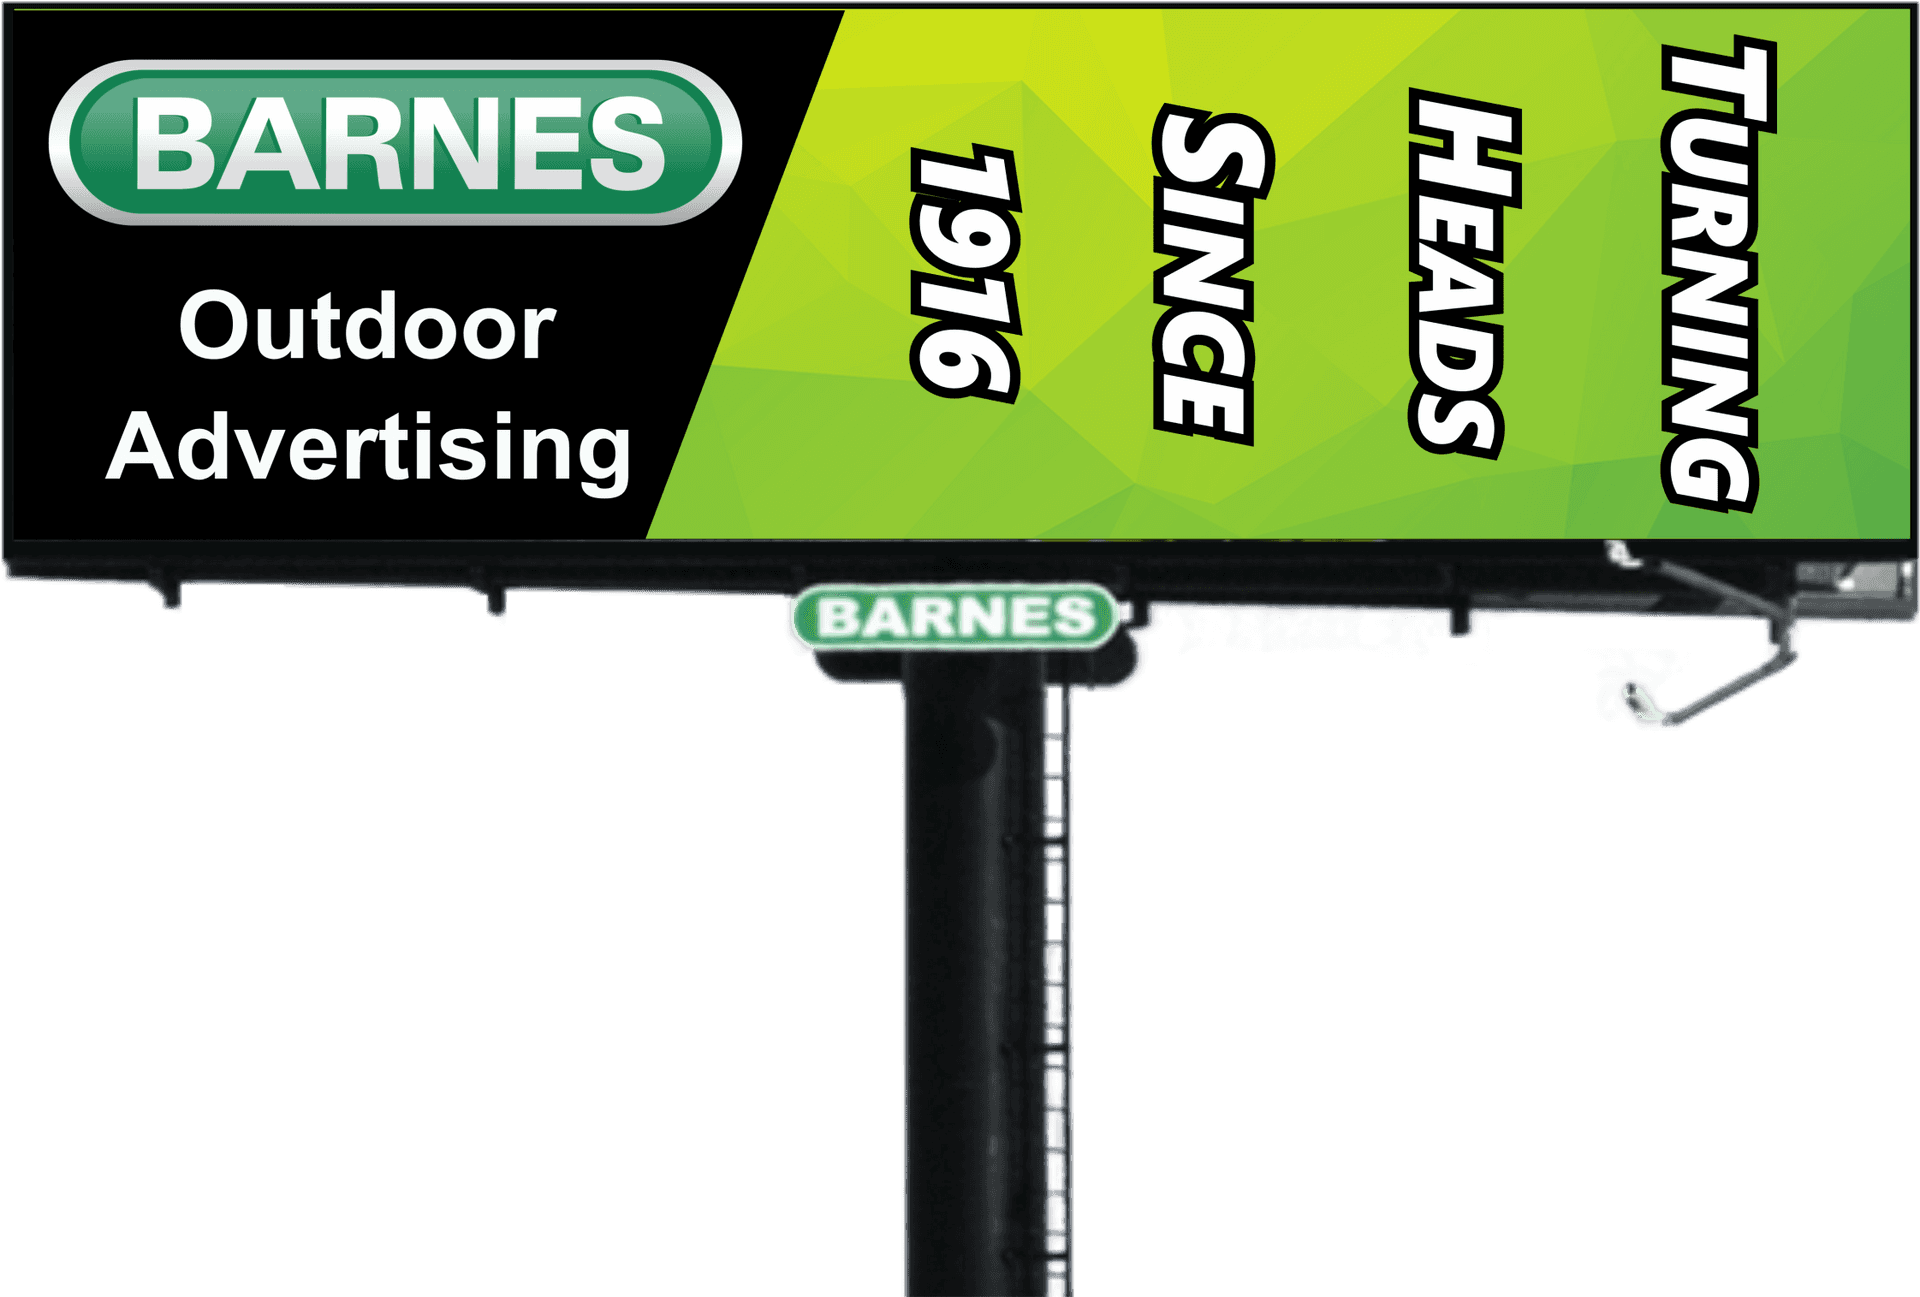 Barnes Outdoor Advertising Billboard PNG image